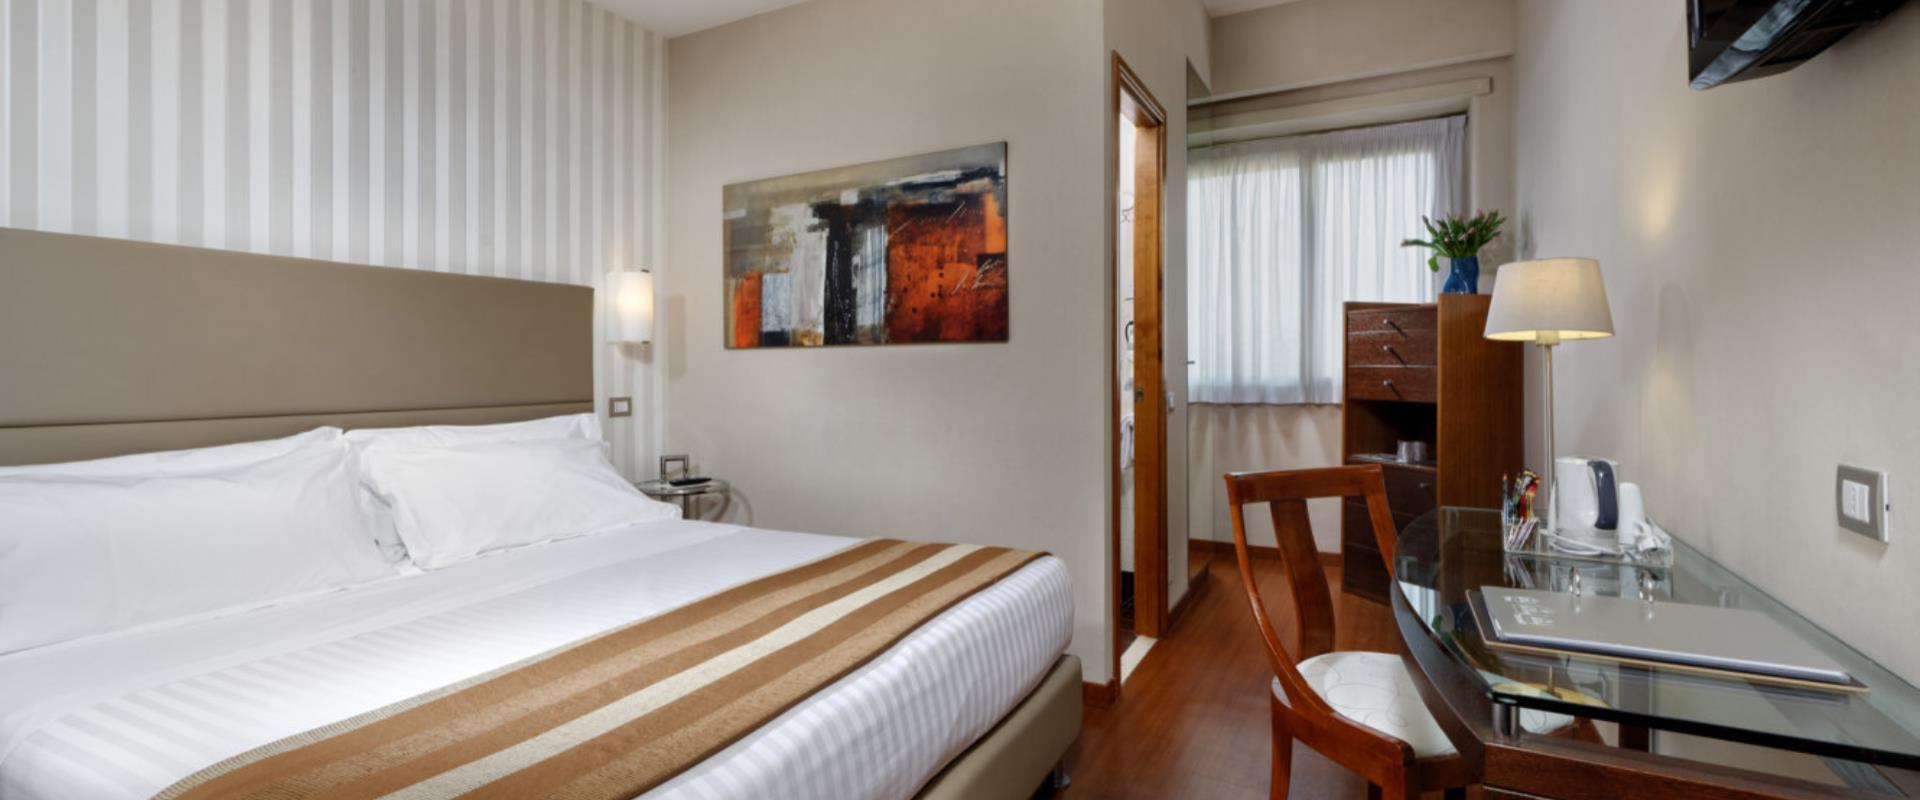 Goditi il relax nelle camere classic dell'Hotel Piccadilly!